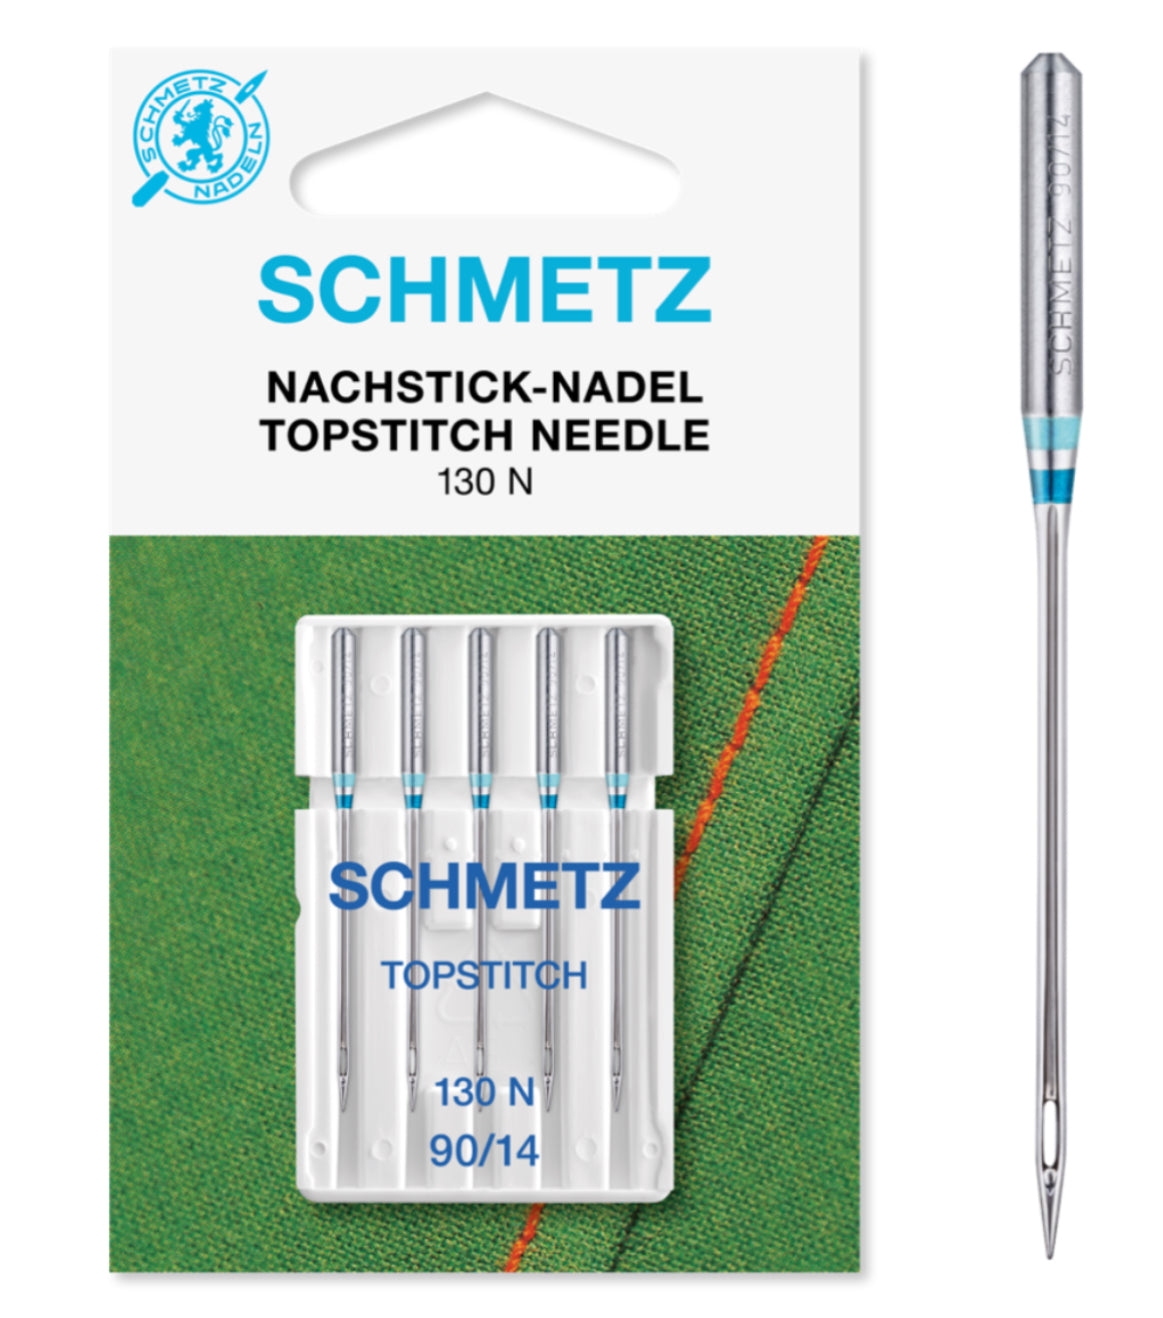 SCHMETZ Topstitch Nadeln
80 - 100